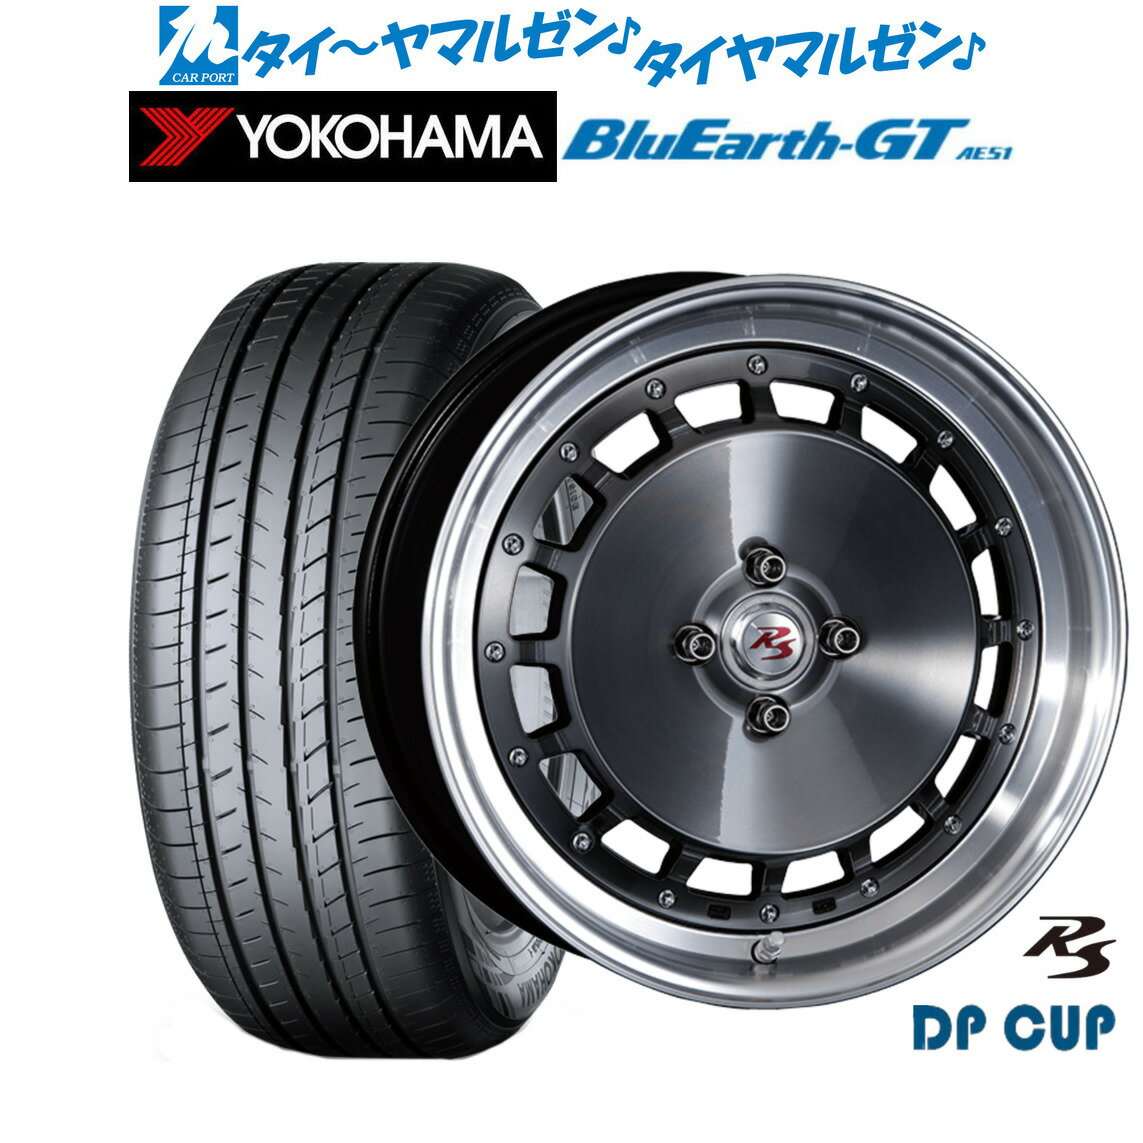 [5/20]割引クーポン配布新品 サマータイヤ ホイール4本セットクリムソン RS DP CUP モノブロック16インチ 6.5Jヨコハマ BluEarth ブルーアース GT (AE51) 205/45R16